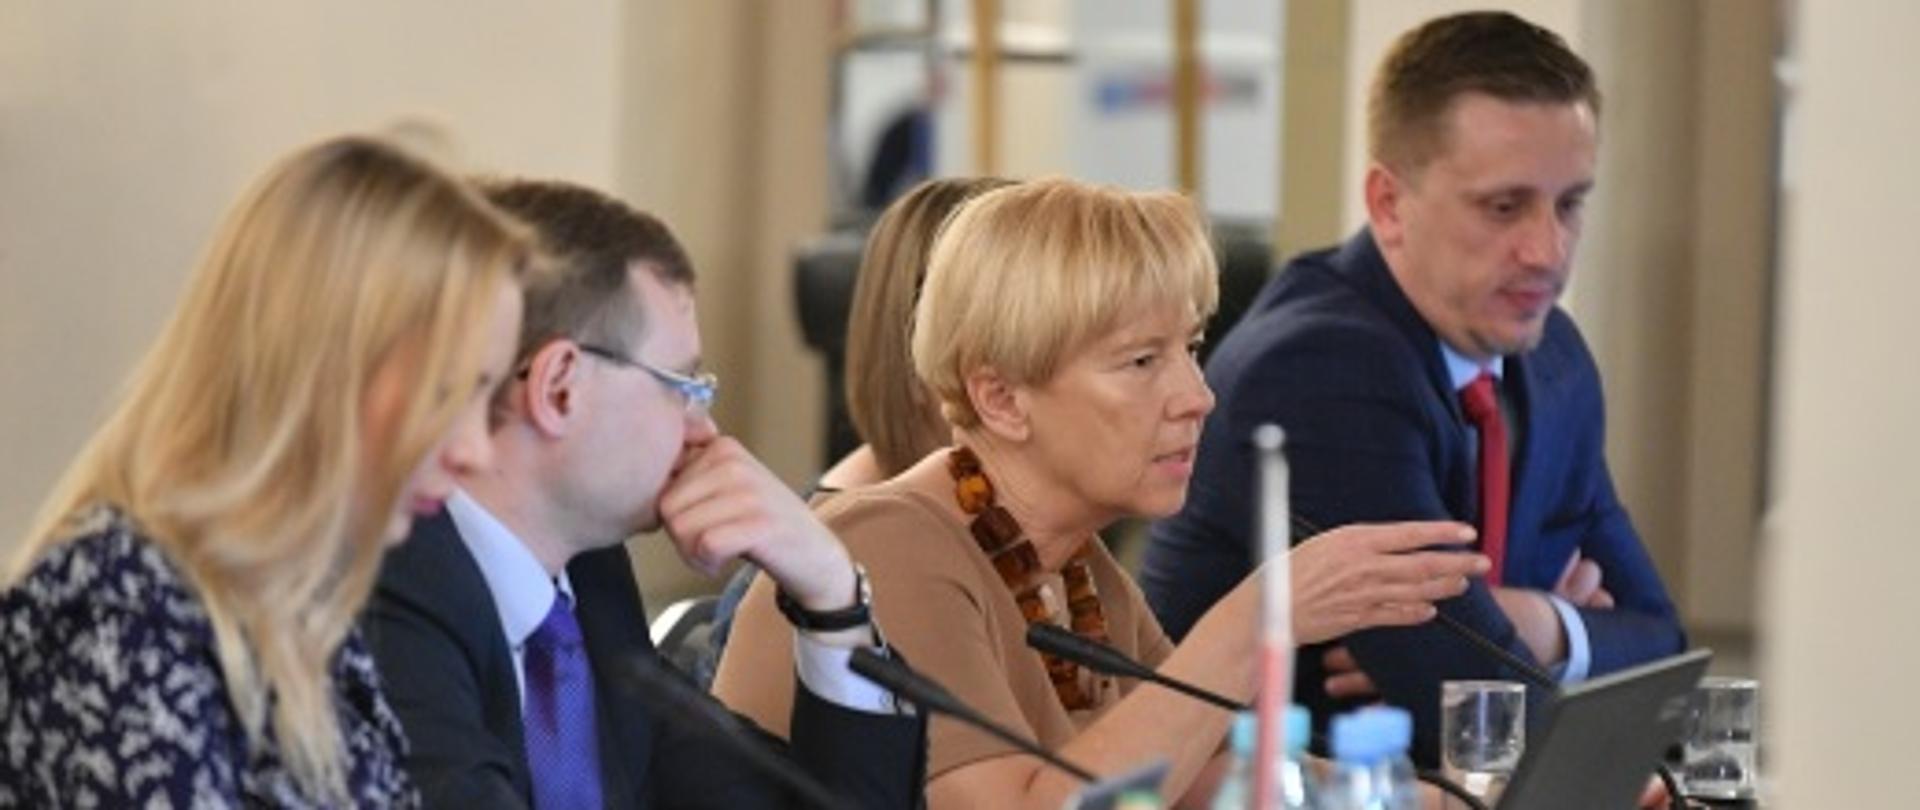 Minister Zielińska siedzi przy stole na którym stoją laptopy i mikrofony. Obok niej znajdują się pozostali uczestnicy debaty. 